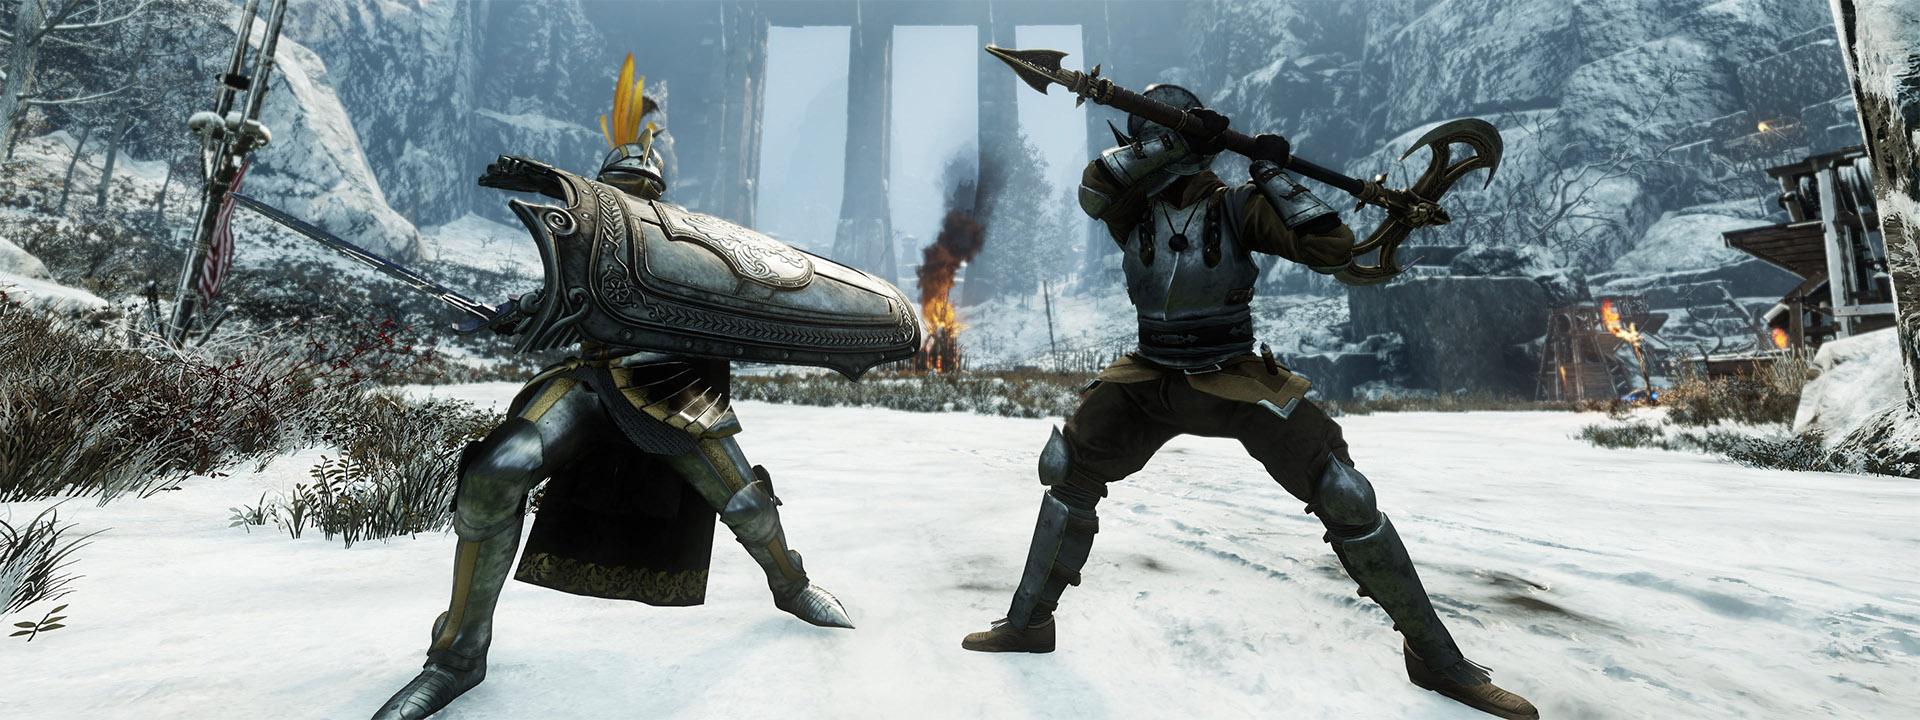 Ein Screenshot von zwei kämpfenden New-World-Charakteren.